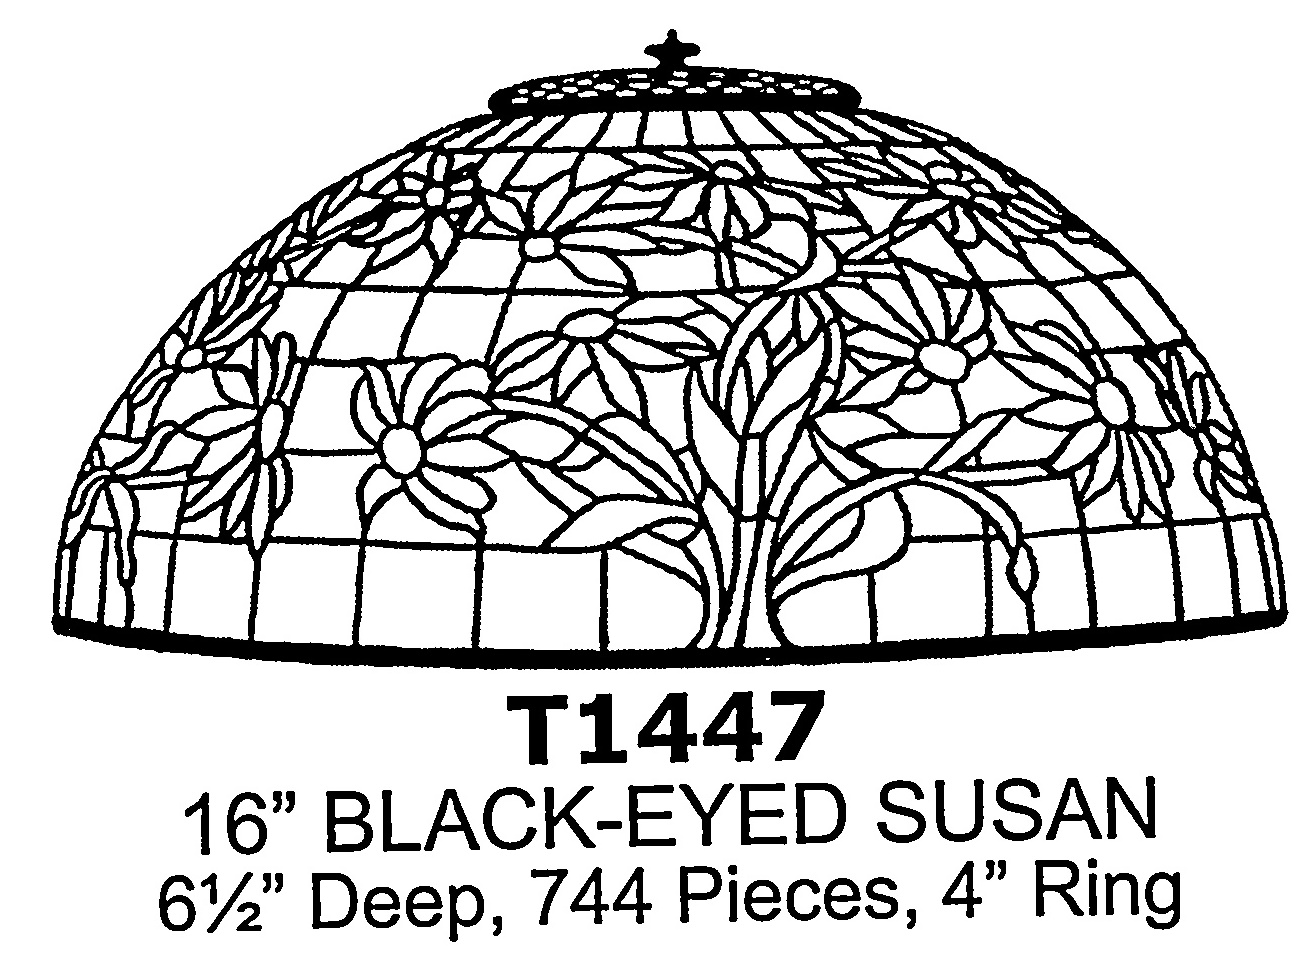 16" Black-Eyed Susan